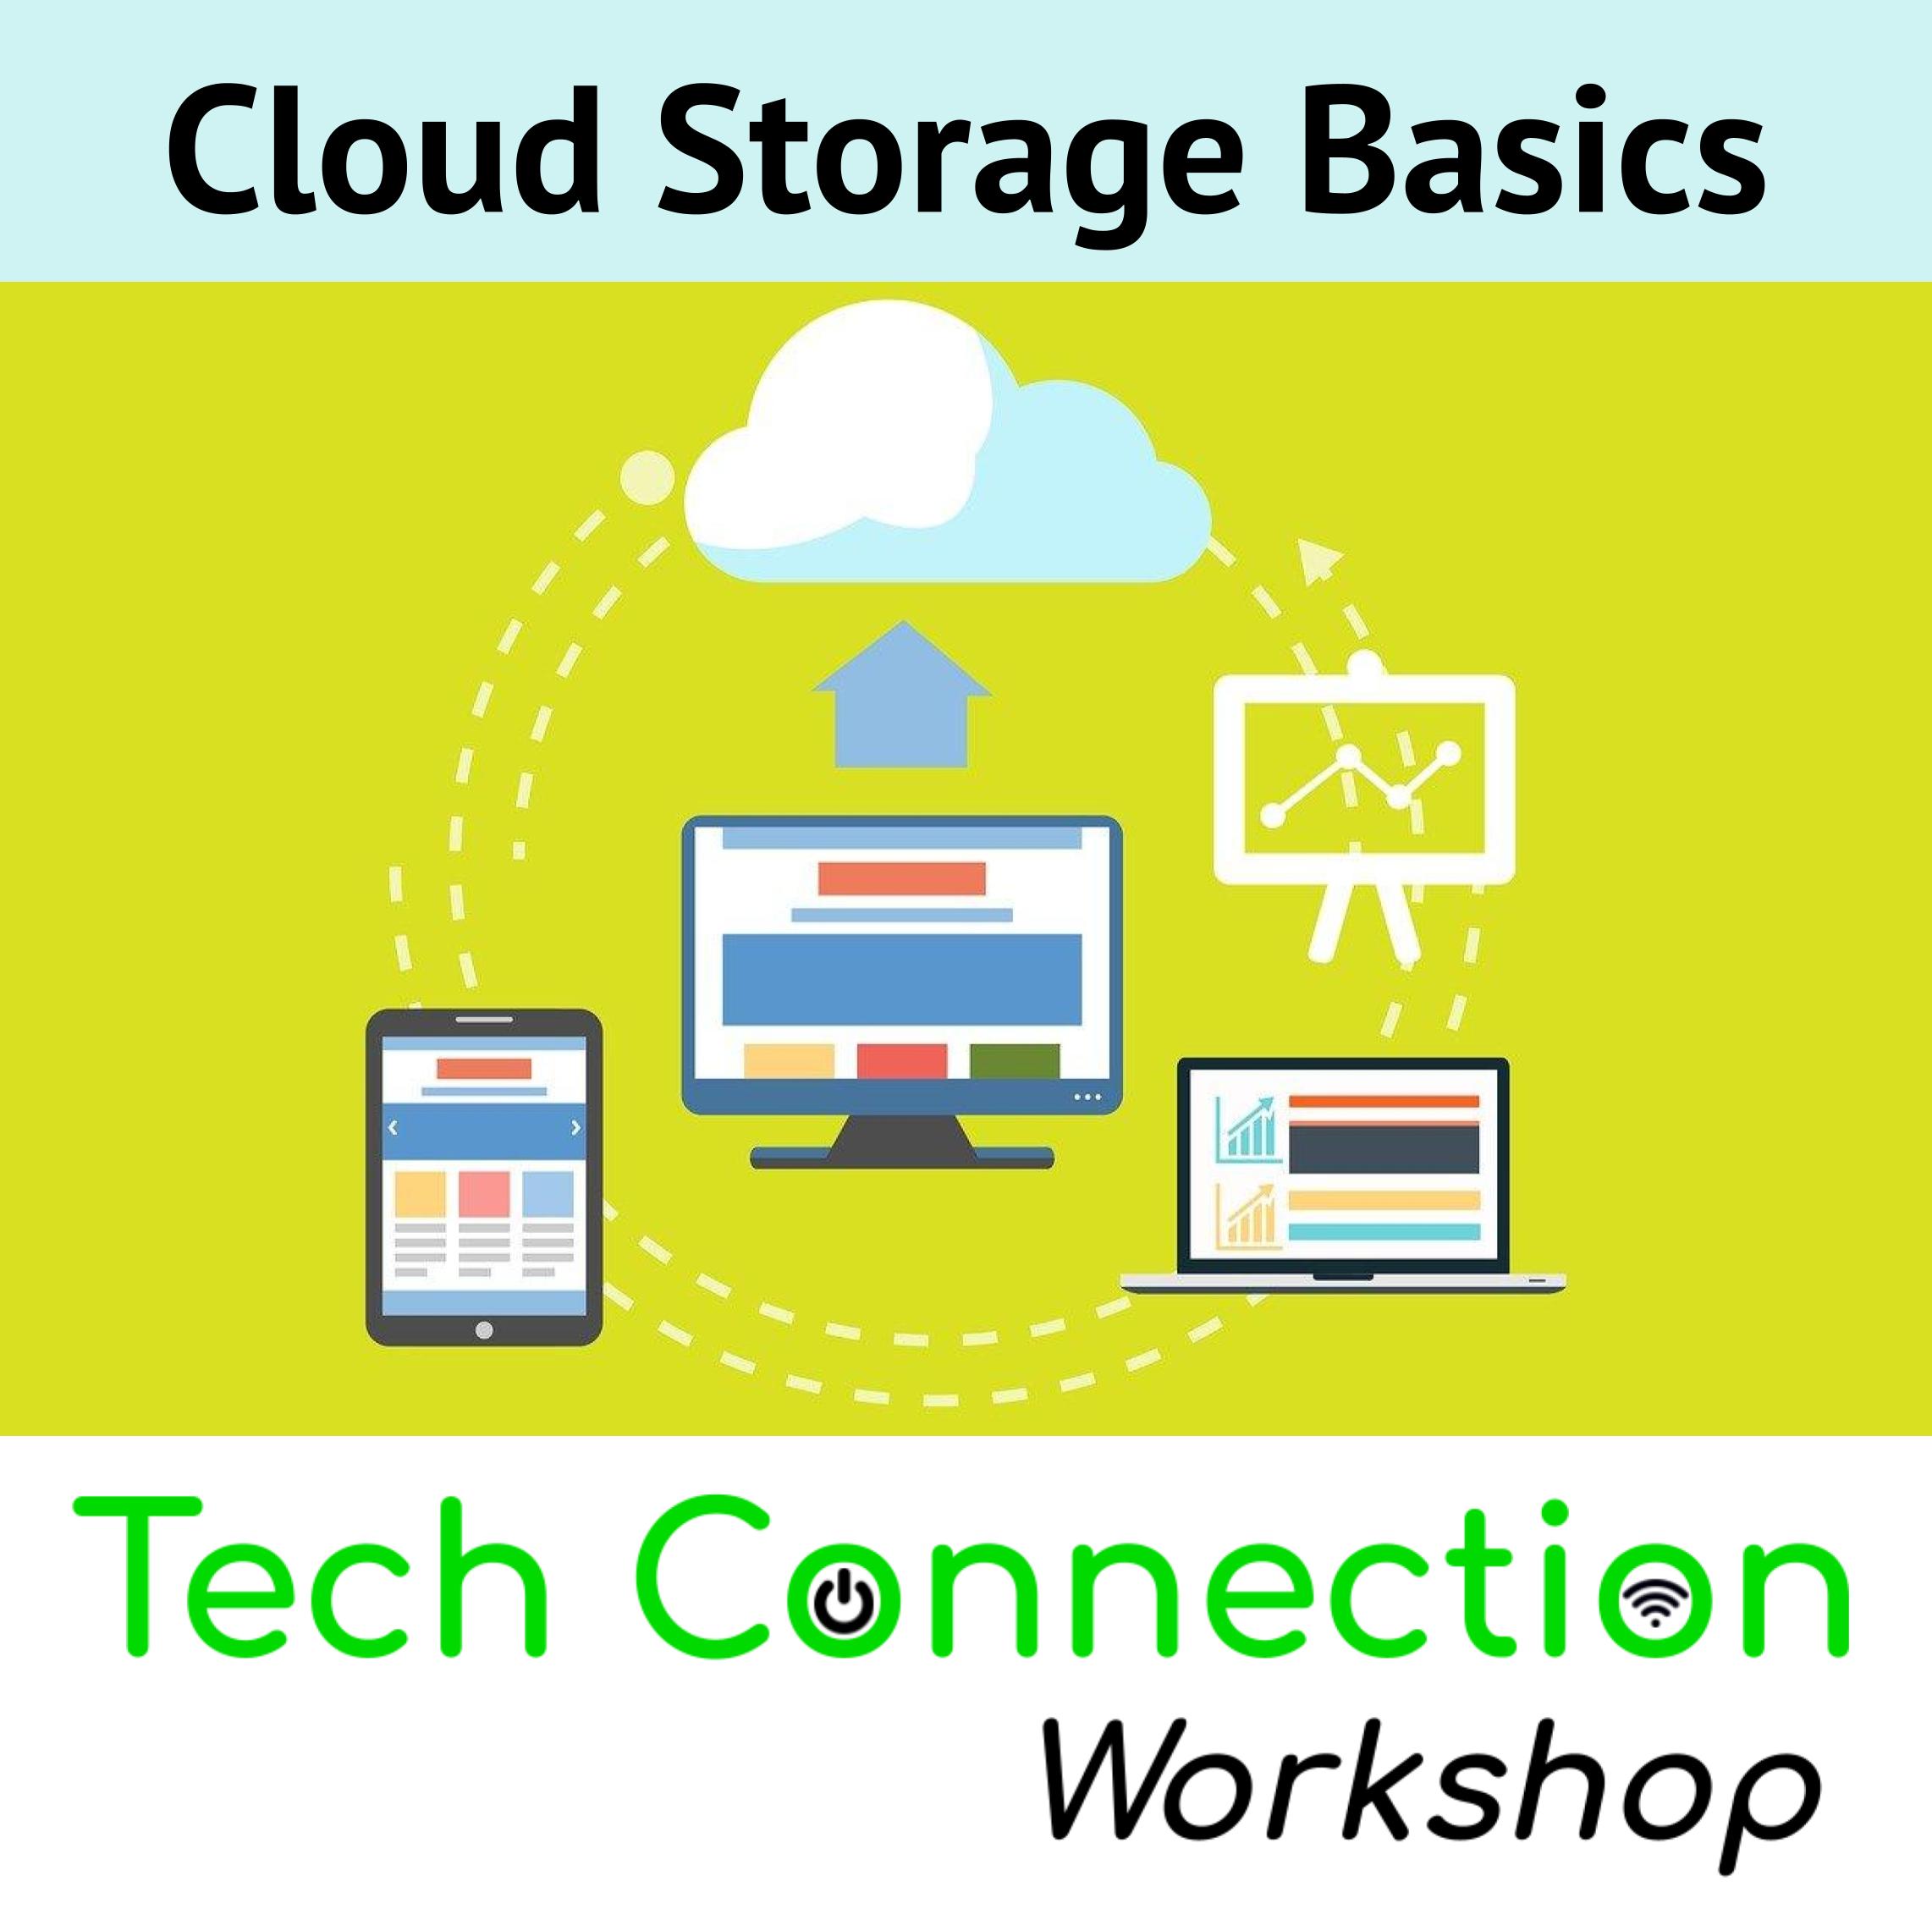 Tech Connection Workshop: Cloud Storage Basics